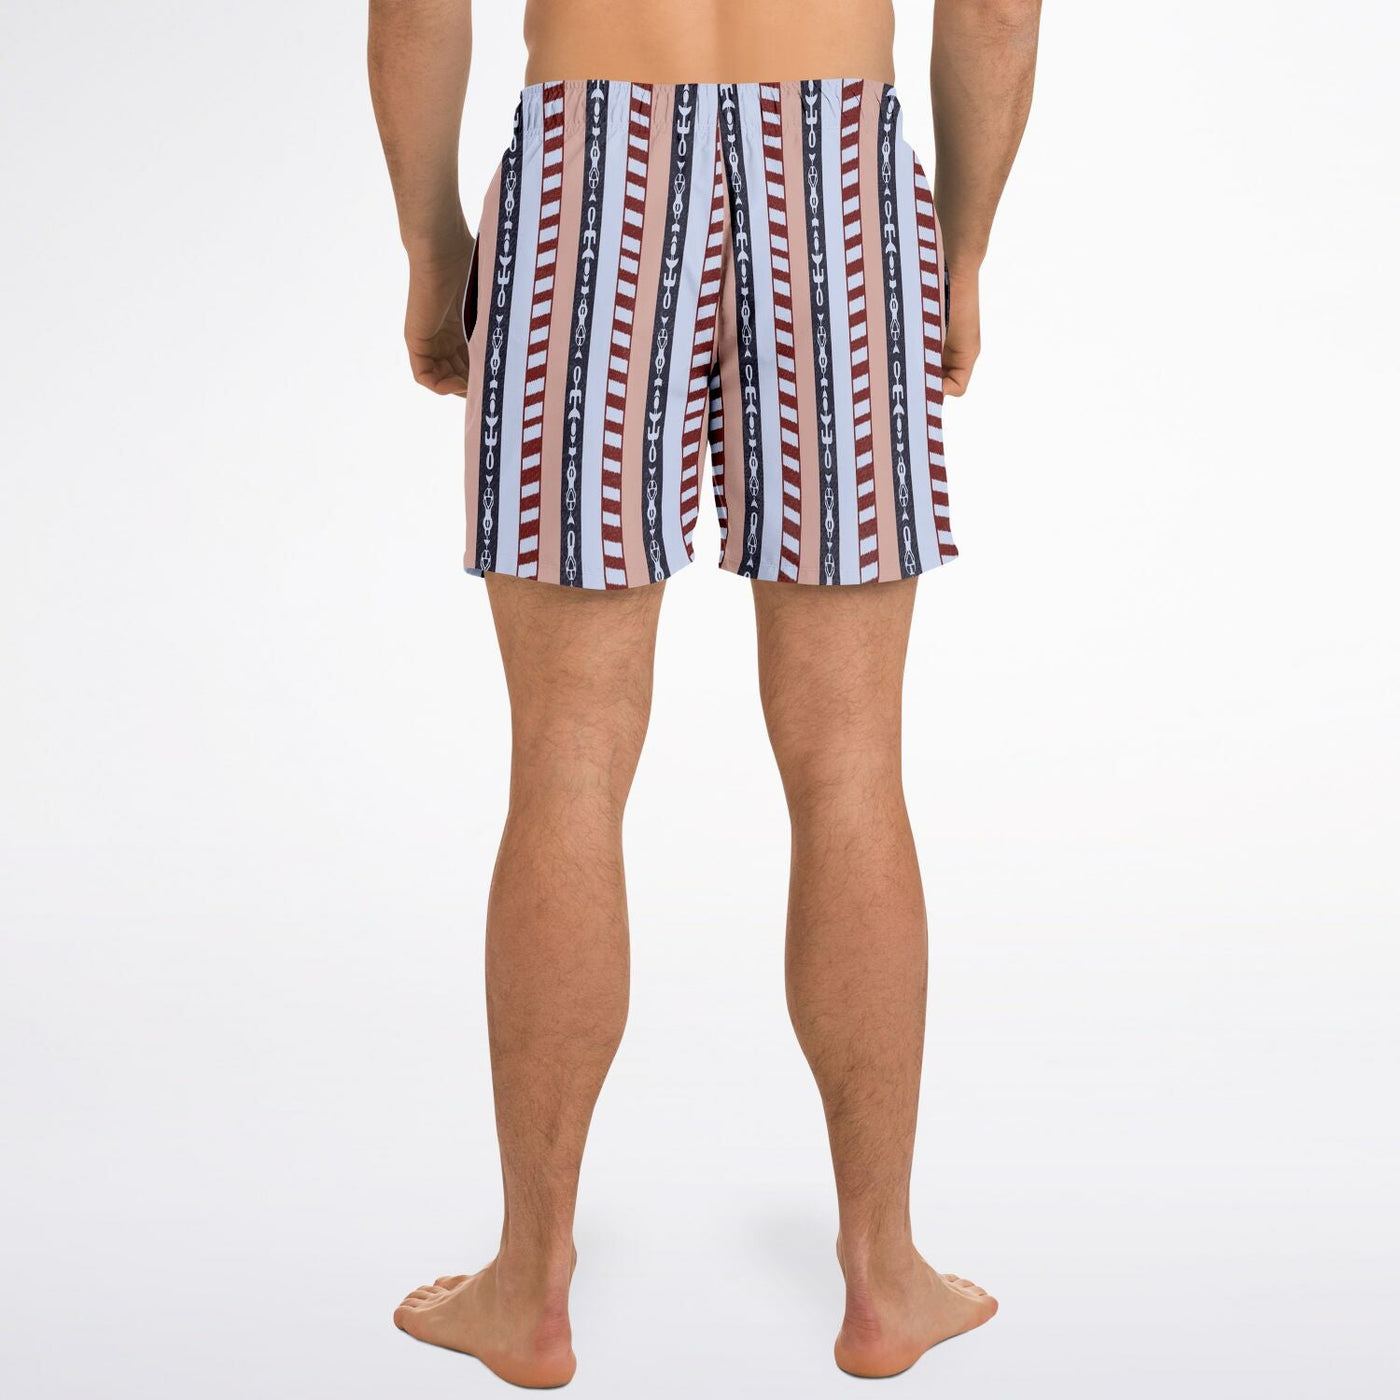 The Dude's Swim Shorts with Iconic Lebowski Pajamas Pattern